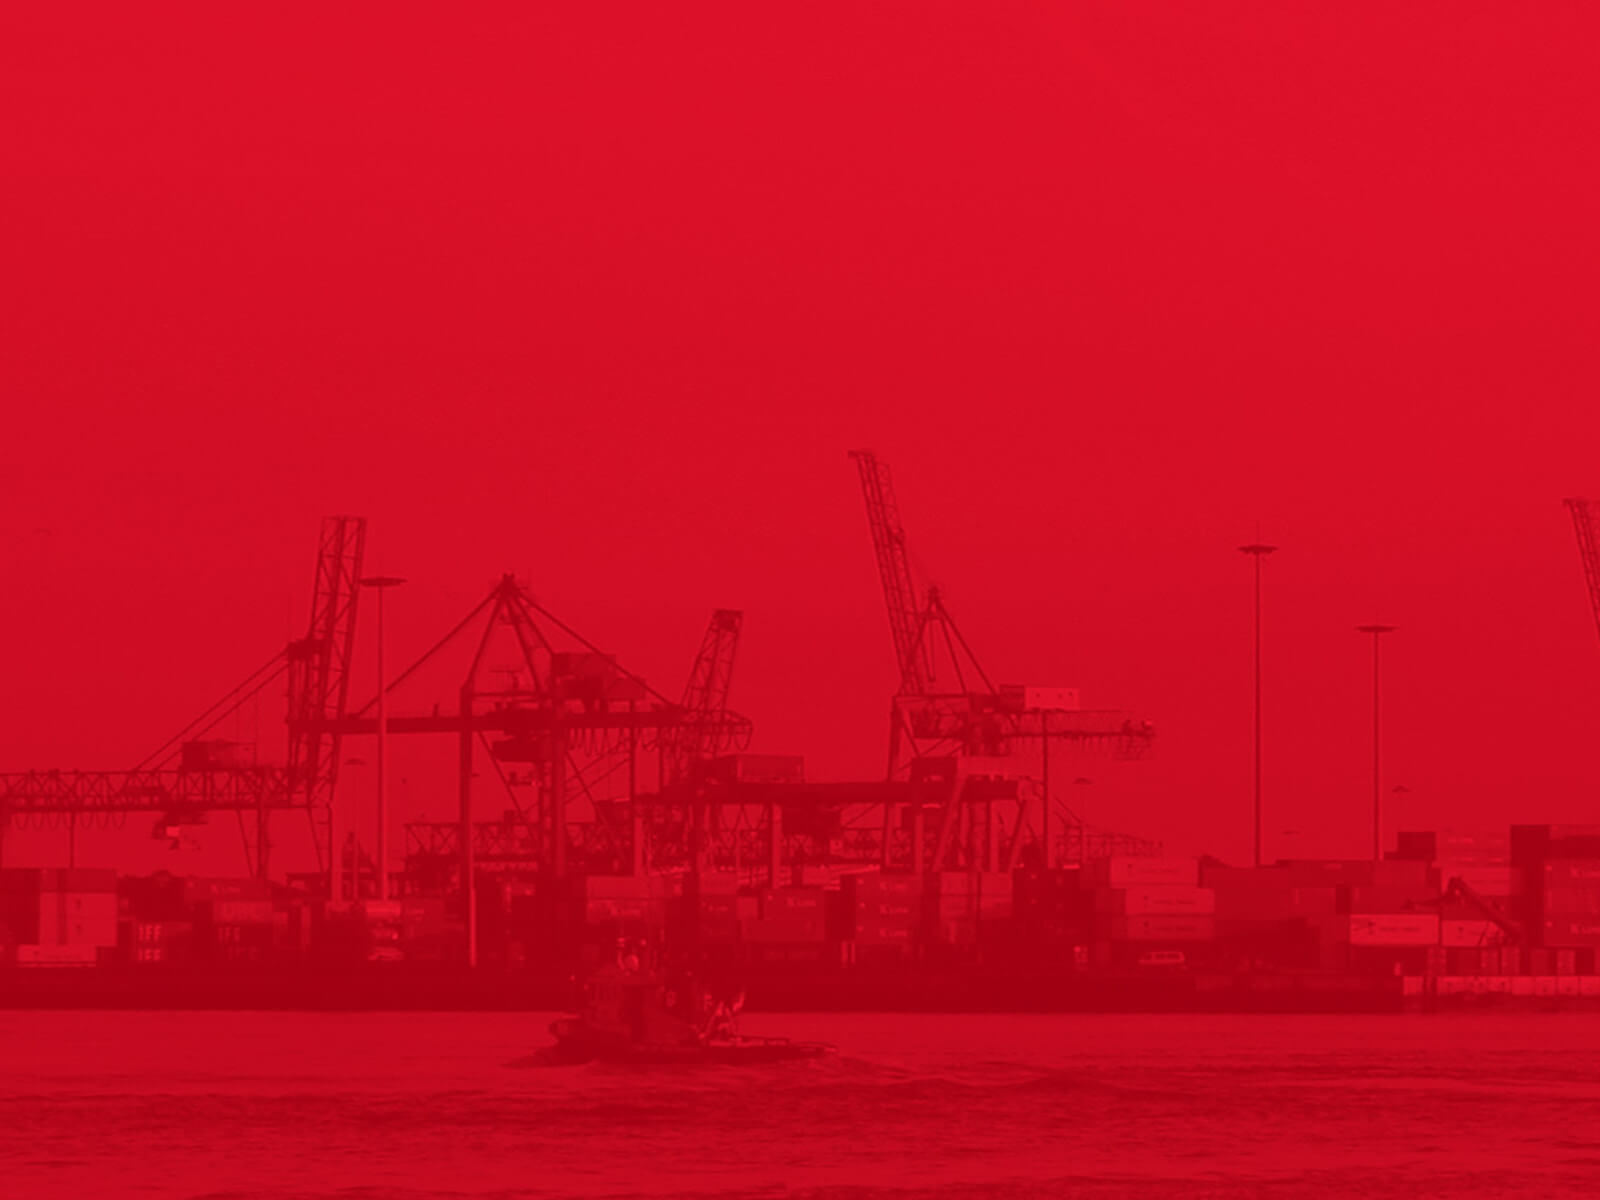 Imagem de fundo de um rebocador indo em direção do porto, esta em tons monocromáticos de vermelho.